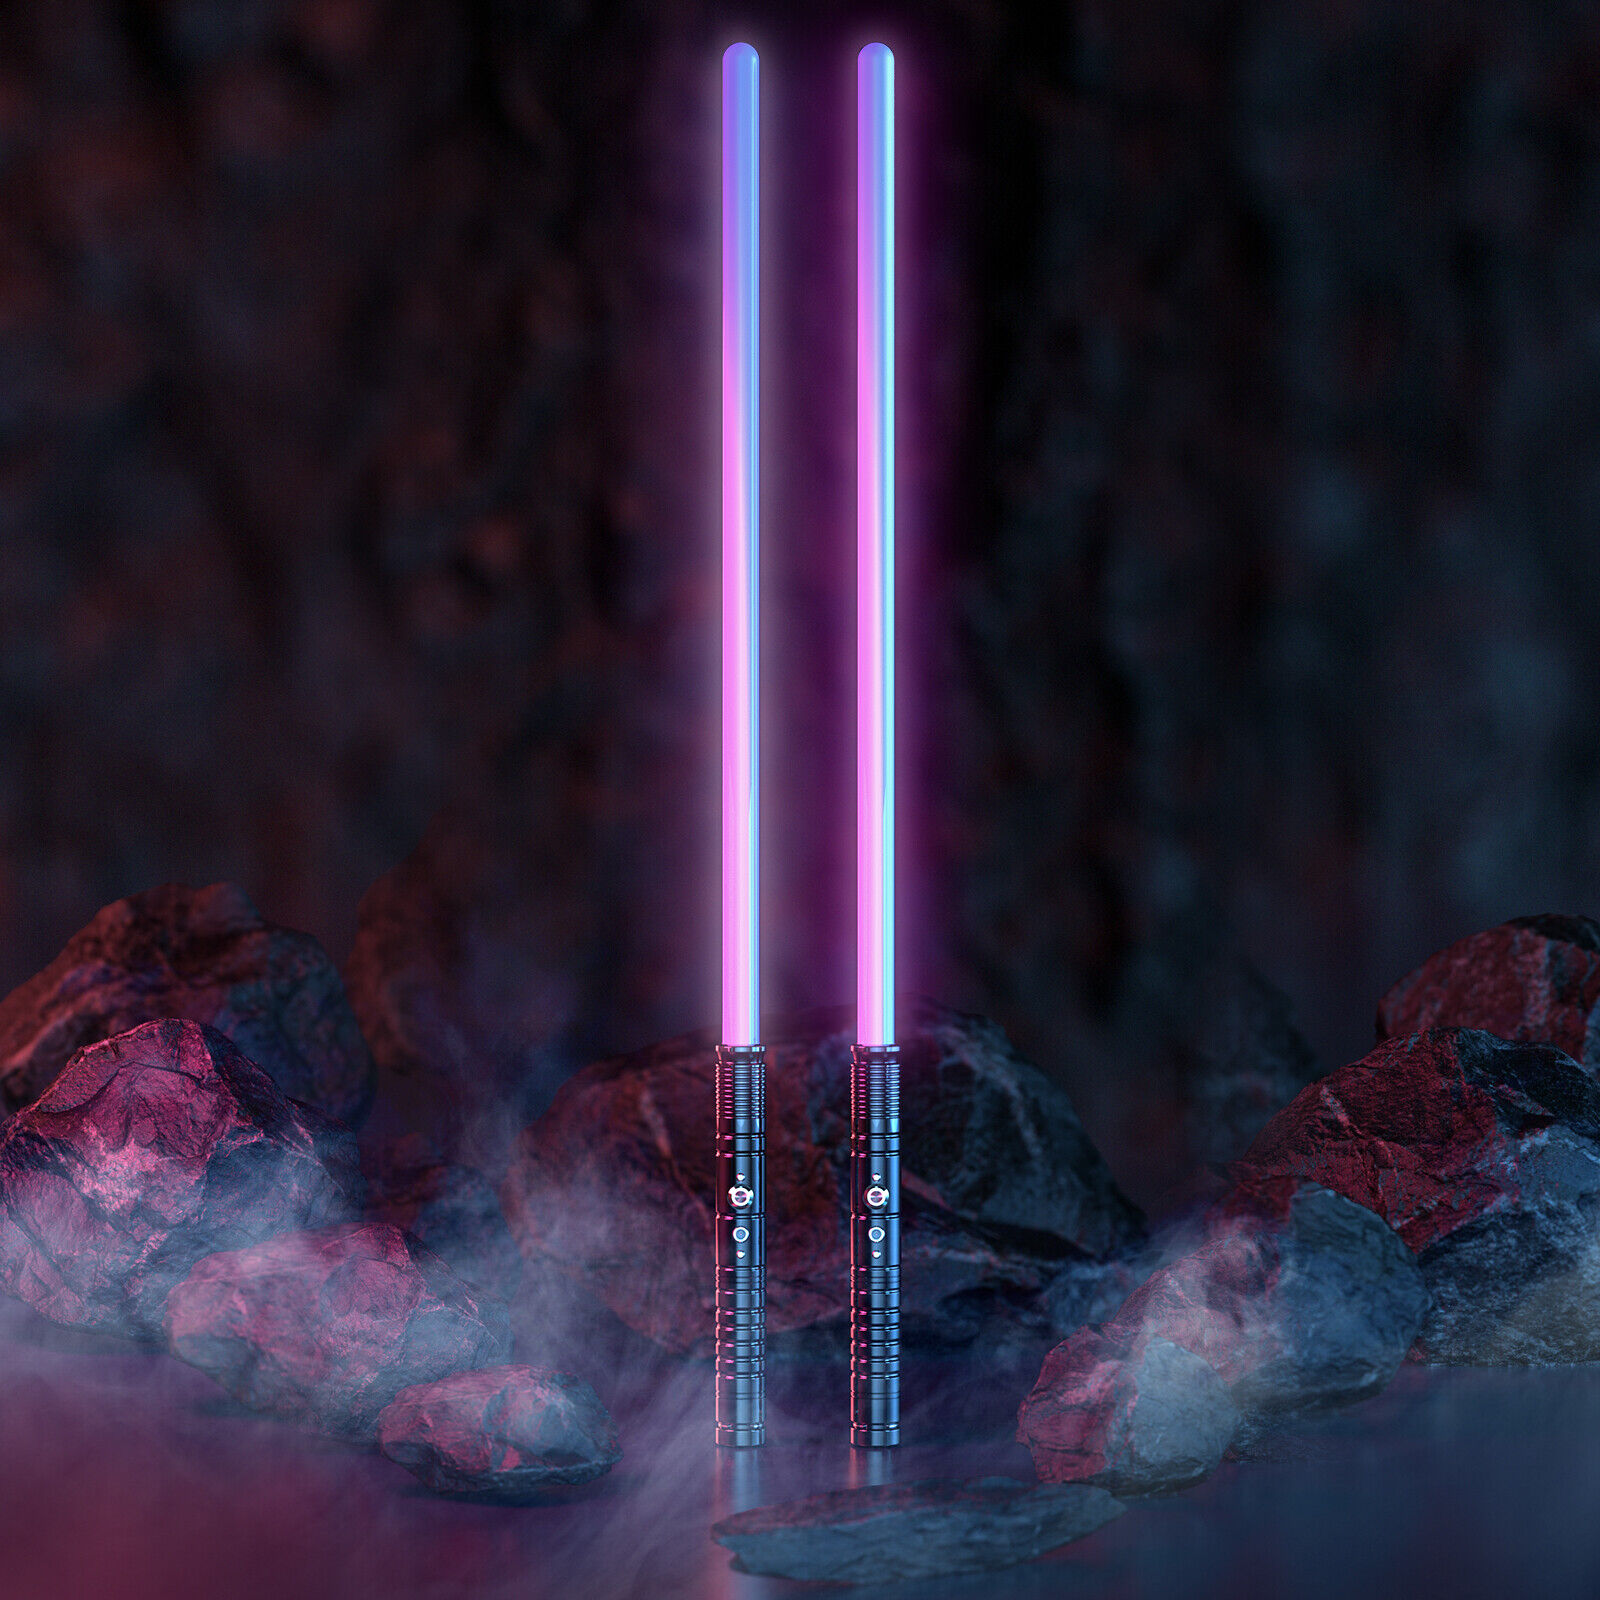 Fx Dueling Force 2in1 Star Wars Lightsaber Sword Metal Hilt RGB 7 Colors US